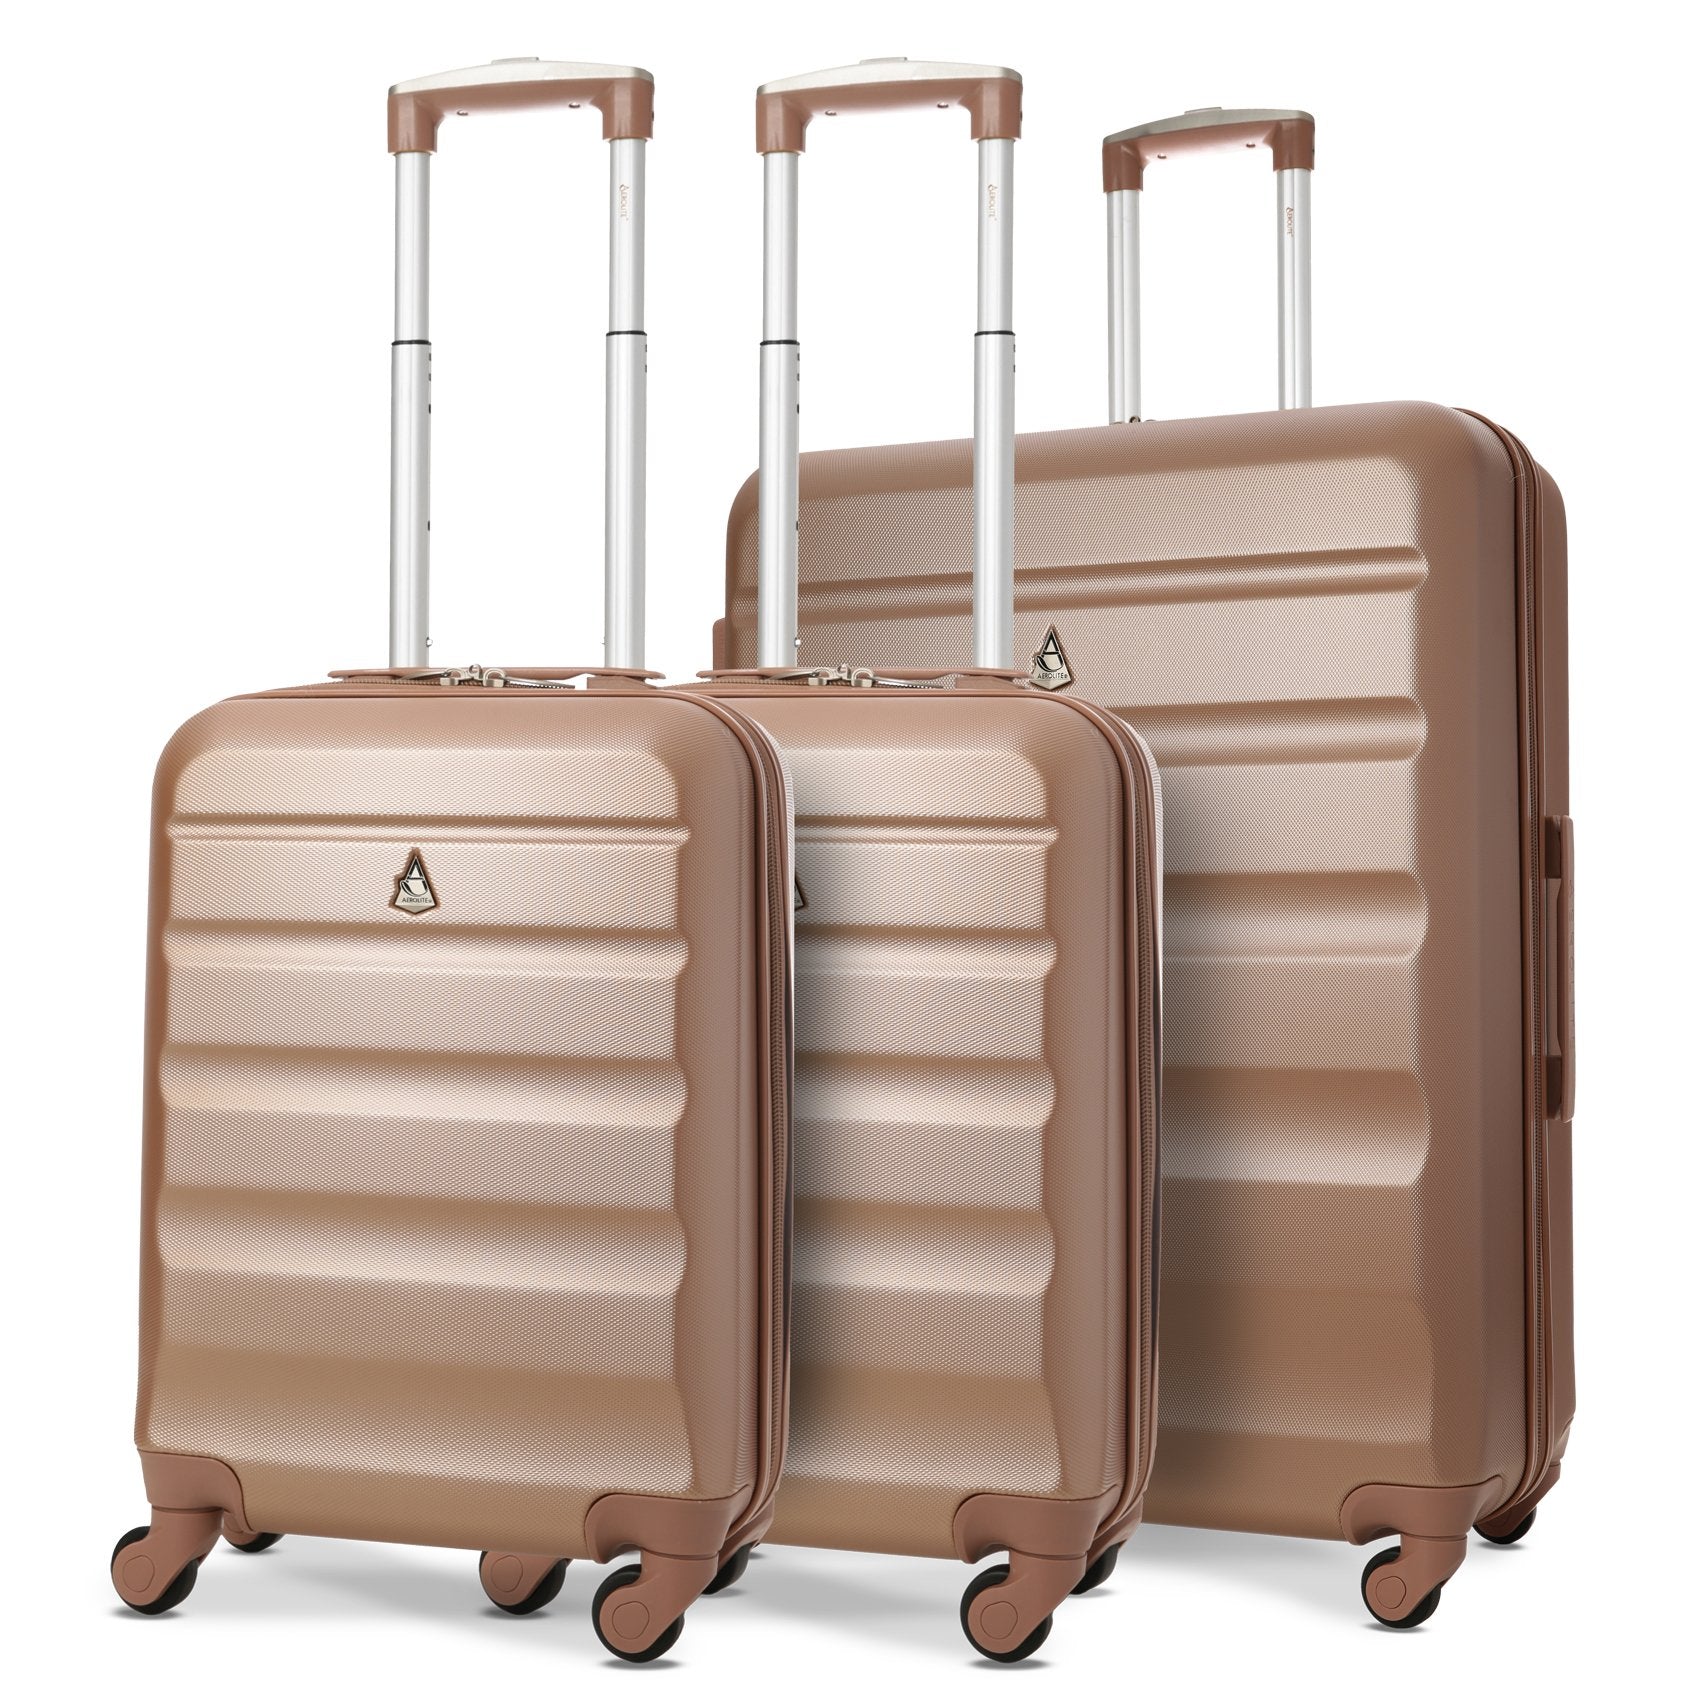 Aerolite Hard Shell Suitcase Luggage Travel Bundle (2 x Cabin Hand Luggage + 1 x Large Hold Luggage Suitcase)